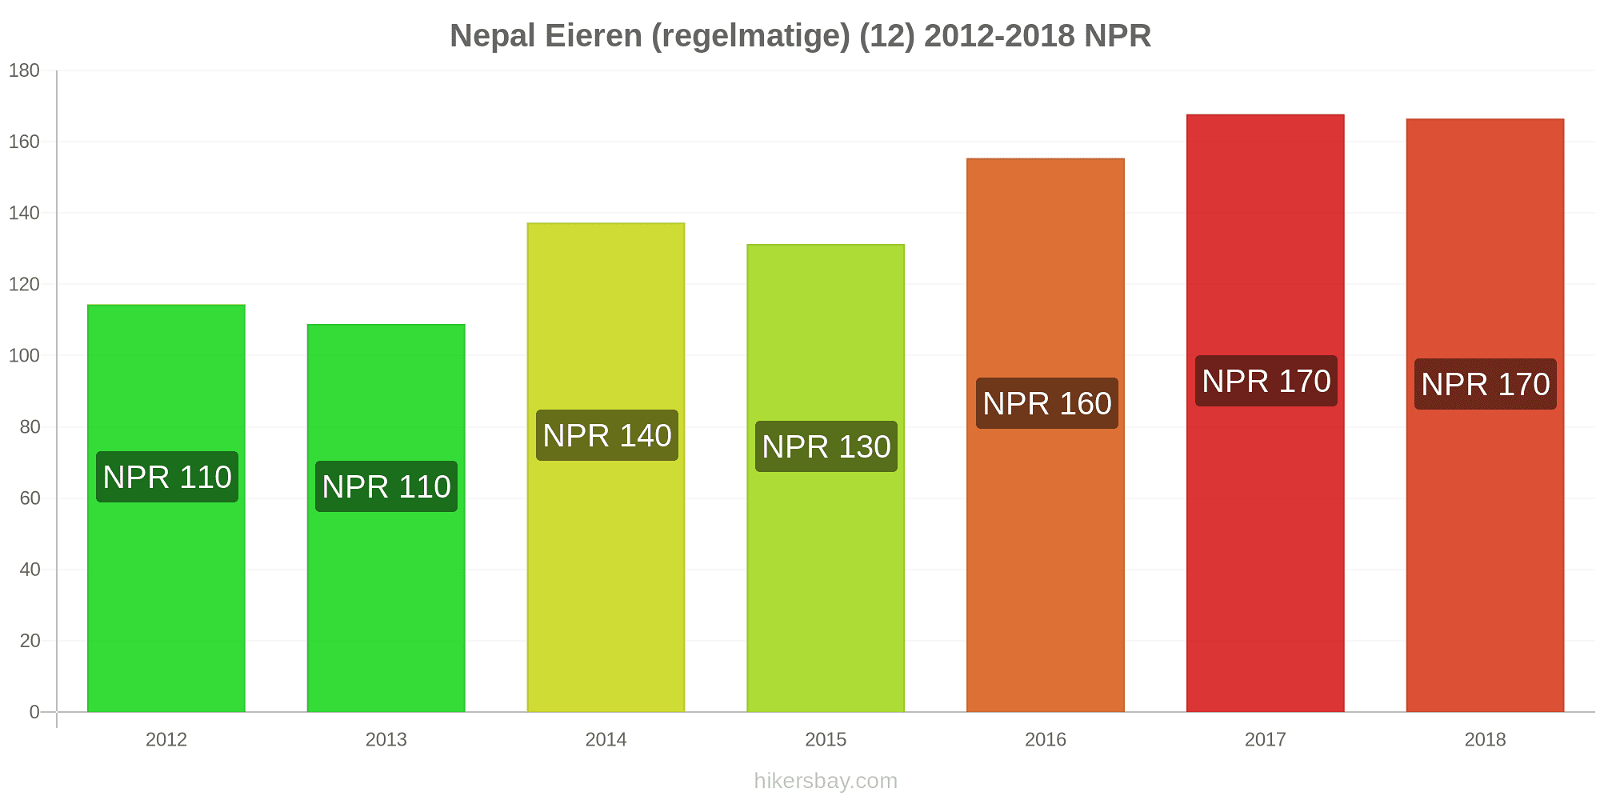 Nepal prijswijzigingen Eieren (normaal) (12) hikersbay.com